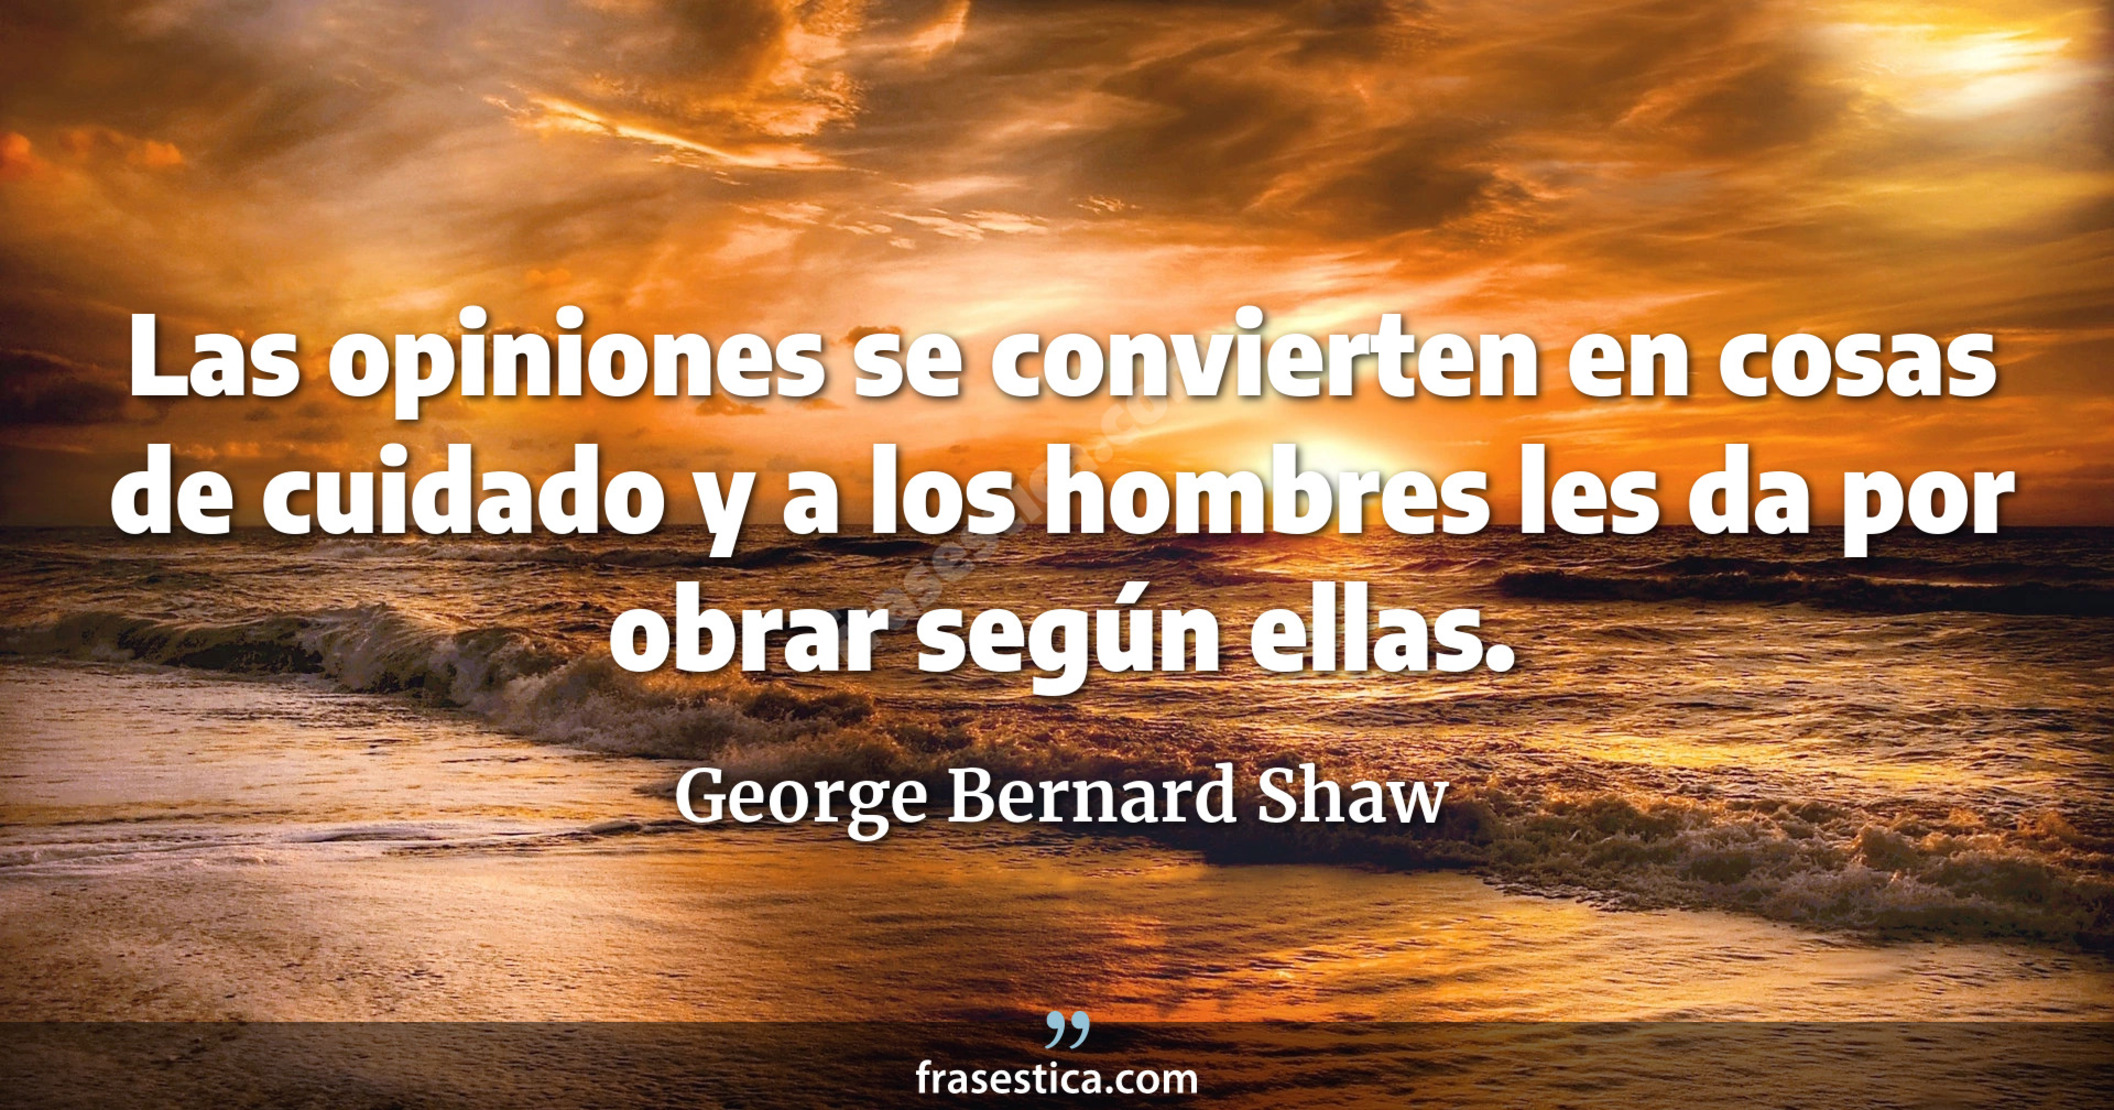 Las opiniones se convierten en cosas de cuidado y a los hombres les da por obrar según ellas. - George Bernard Shaw